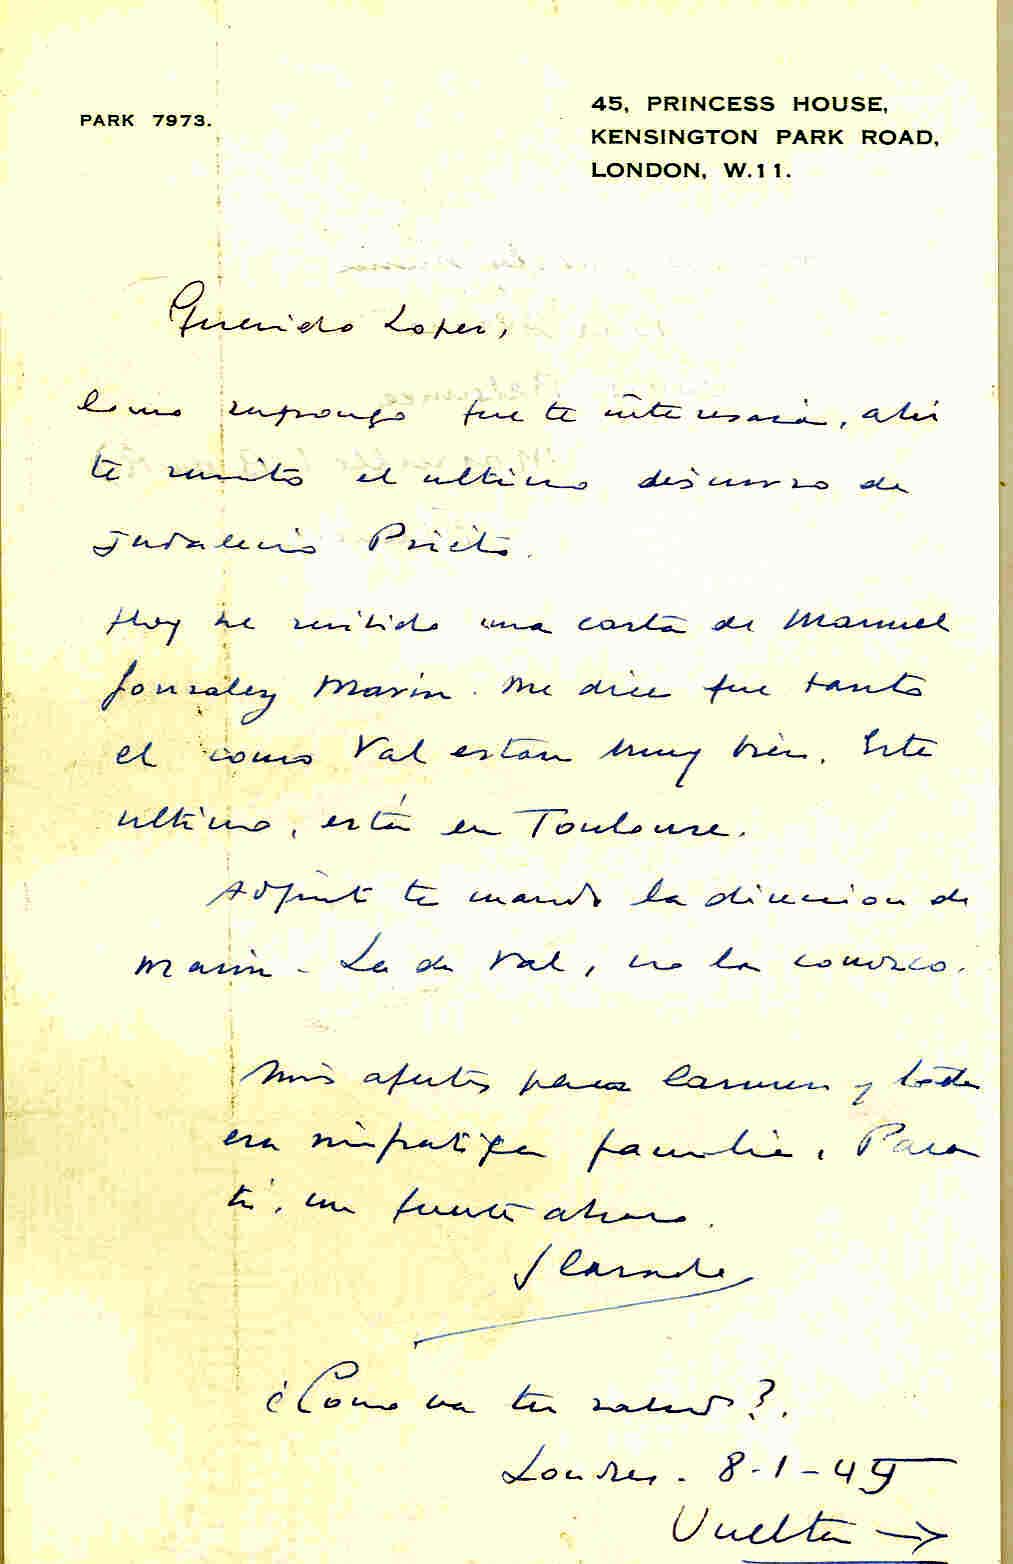 Carta de Segismundo Casado con la que remite el último discurso de Indalecio Prieto y la dirección de González Marín.